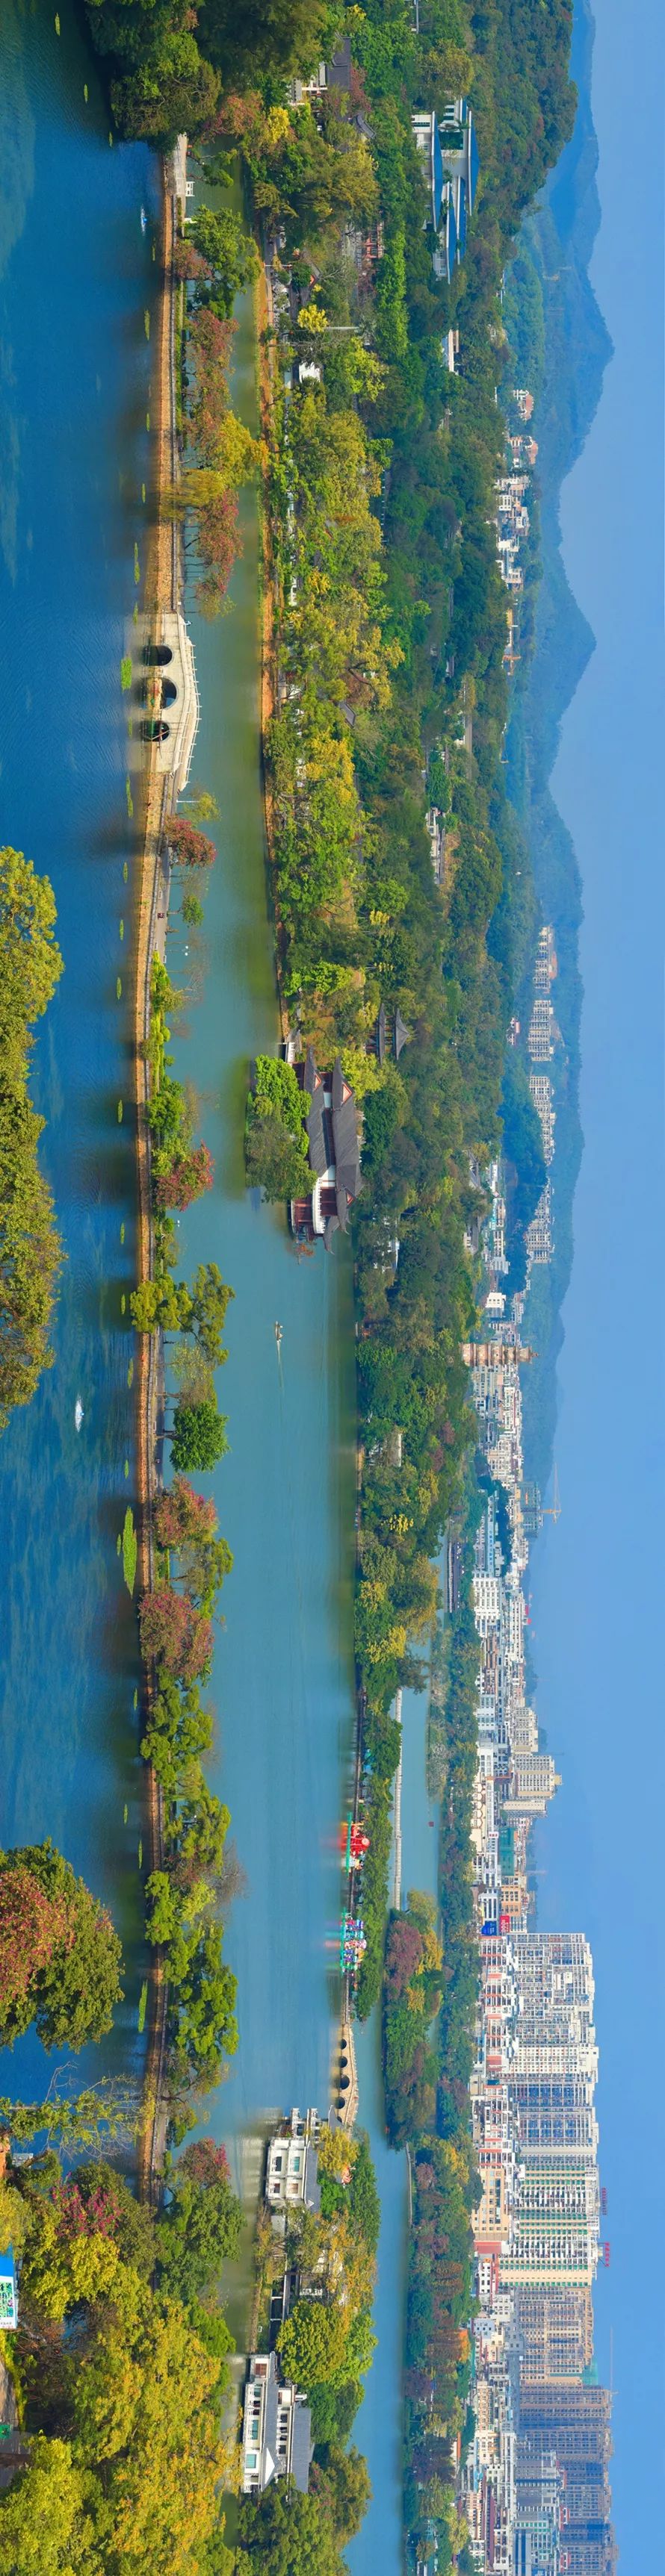 官宣| 喜讯!惠州西湖风景名胜区被正式授予国家aaaaa级景区称号!